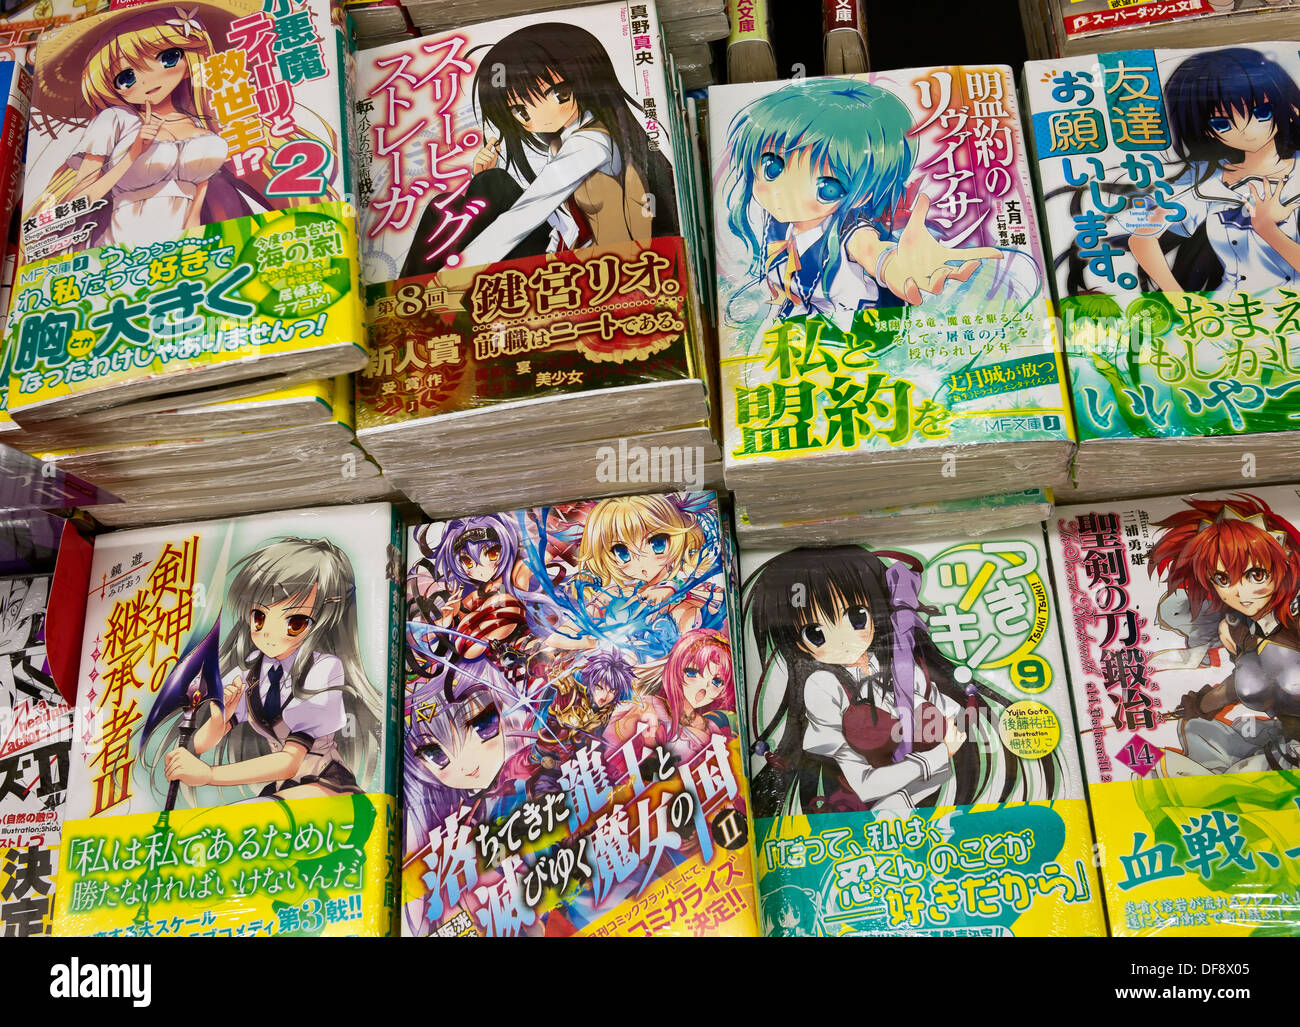 Image result for Manga books